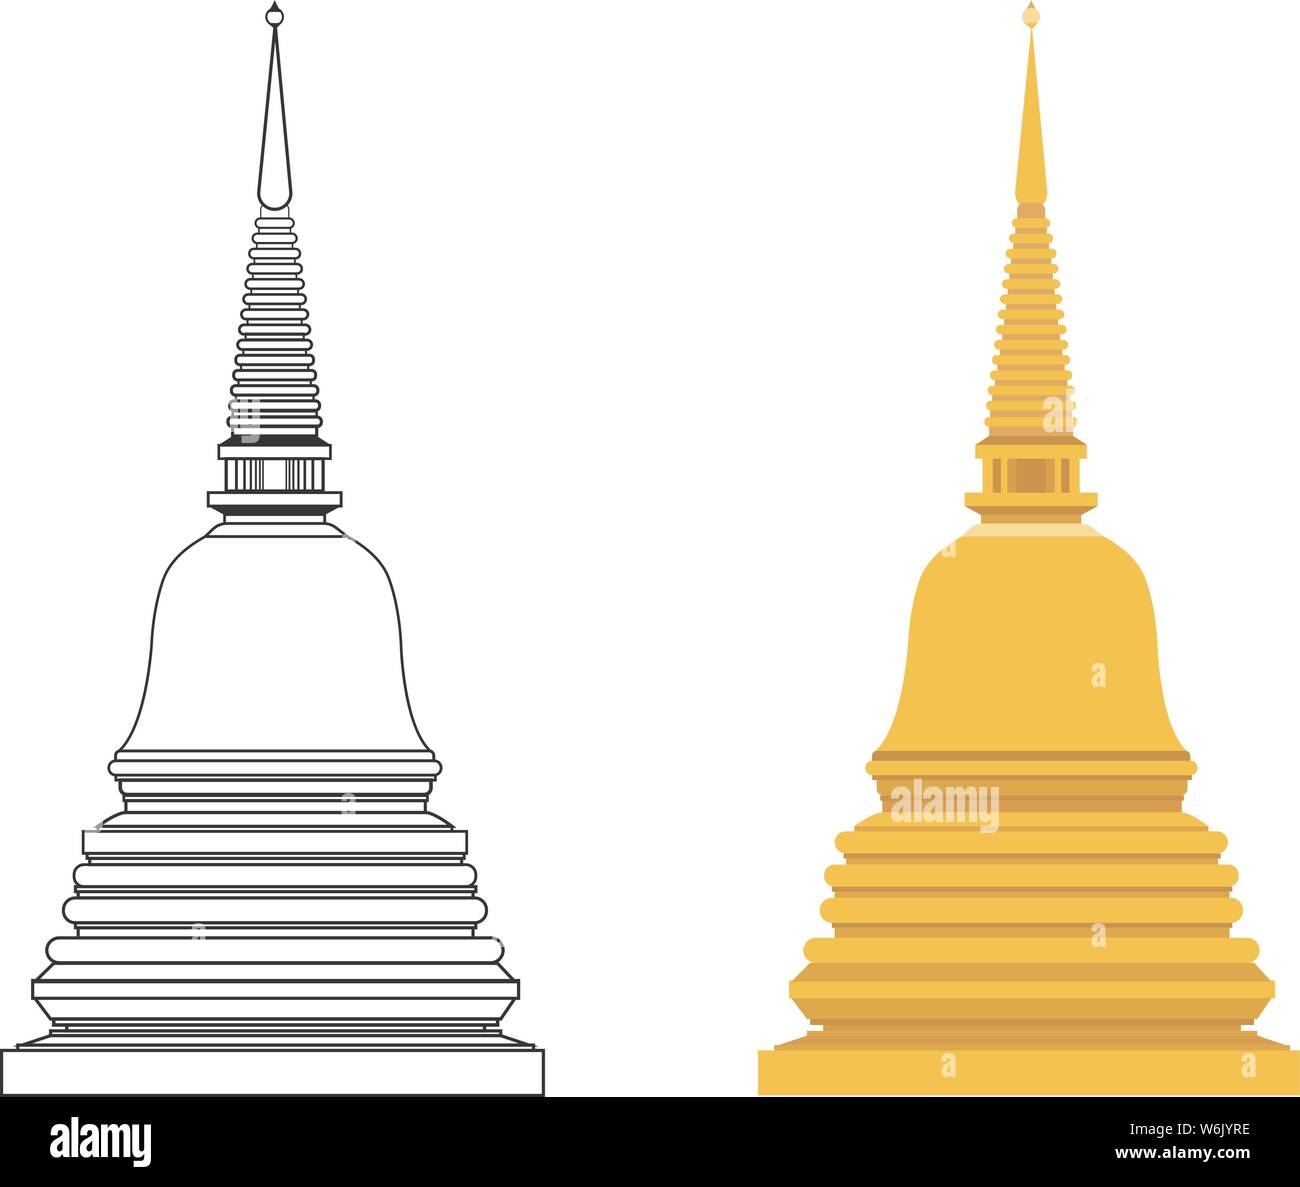 Goldene Pagode und Outline flachbild Vektor mit isolierten weißen Hintergrund. buddhistische Gebäude Symbol Stock Vektor